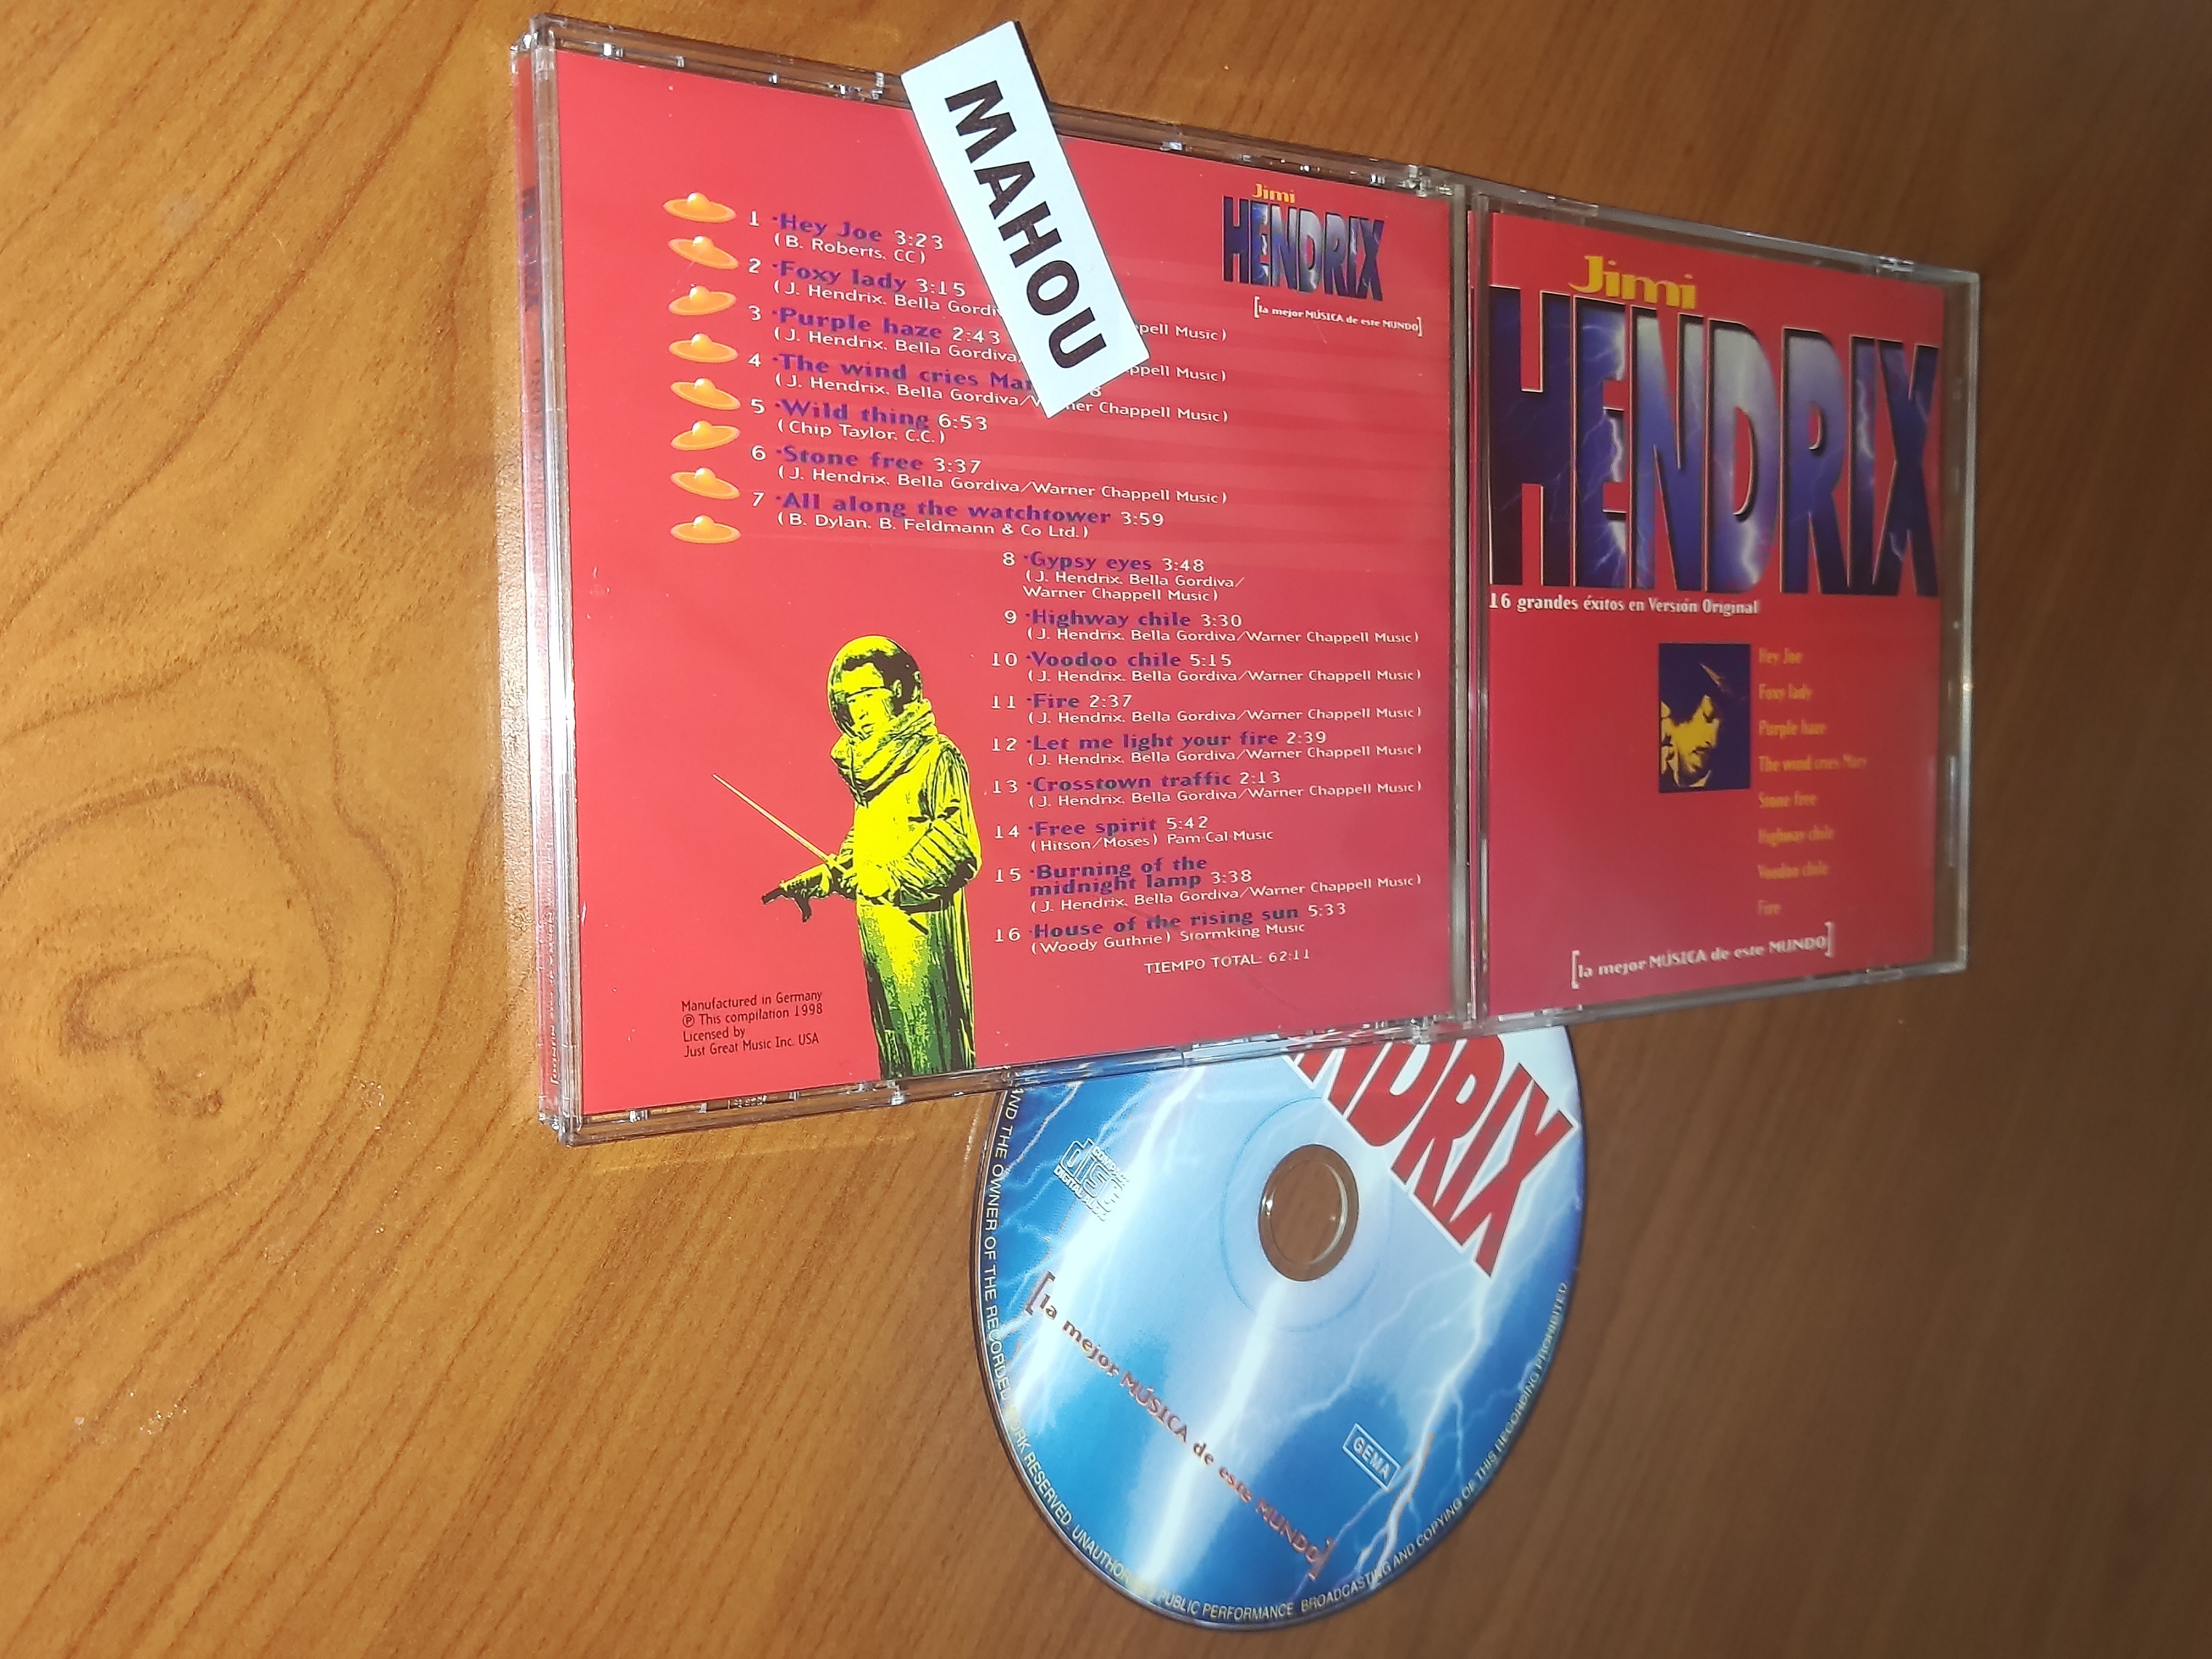 Jimi Hendrix-16 Grandes Exitos En Version Original-CD-FLAC-1998-MAHOU Download